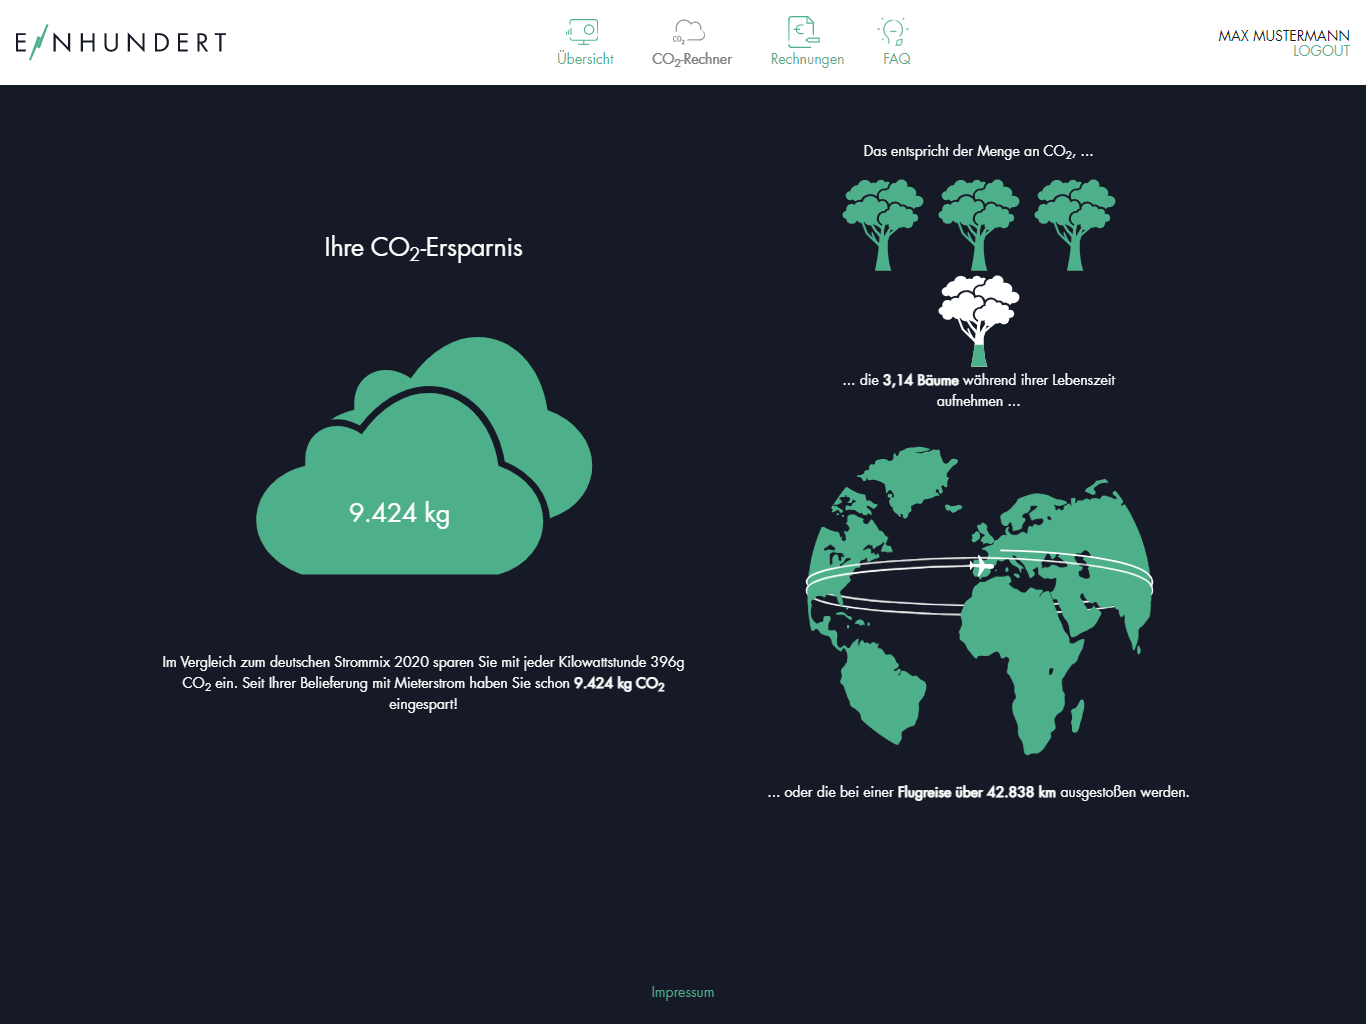 Screenshot Mieterportal CO2-Rechner mit Einsparungen und entsprechender Kompensation in Bäumen und Flugreisen